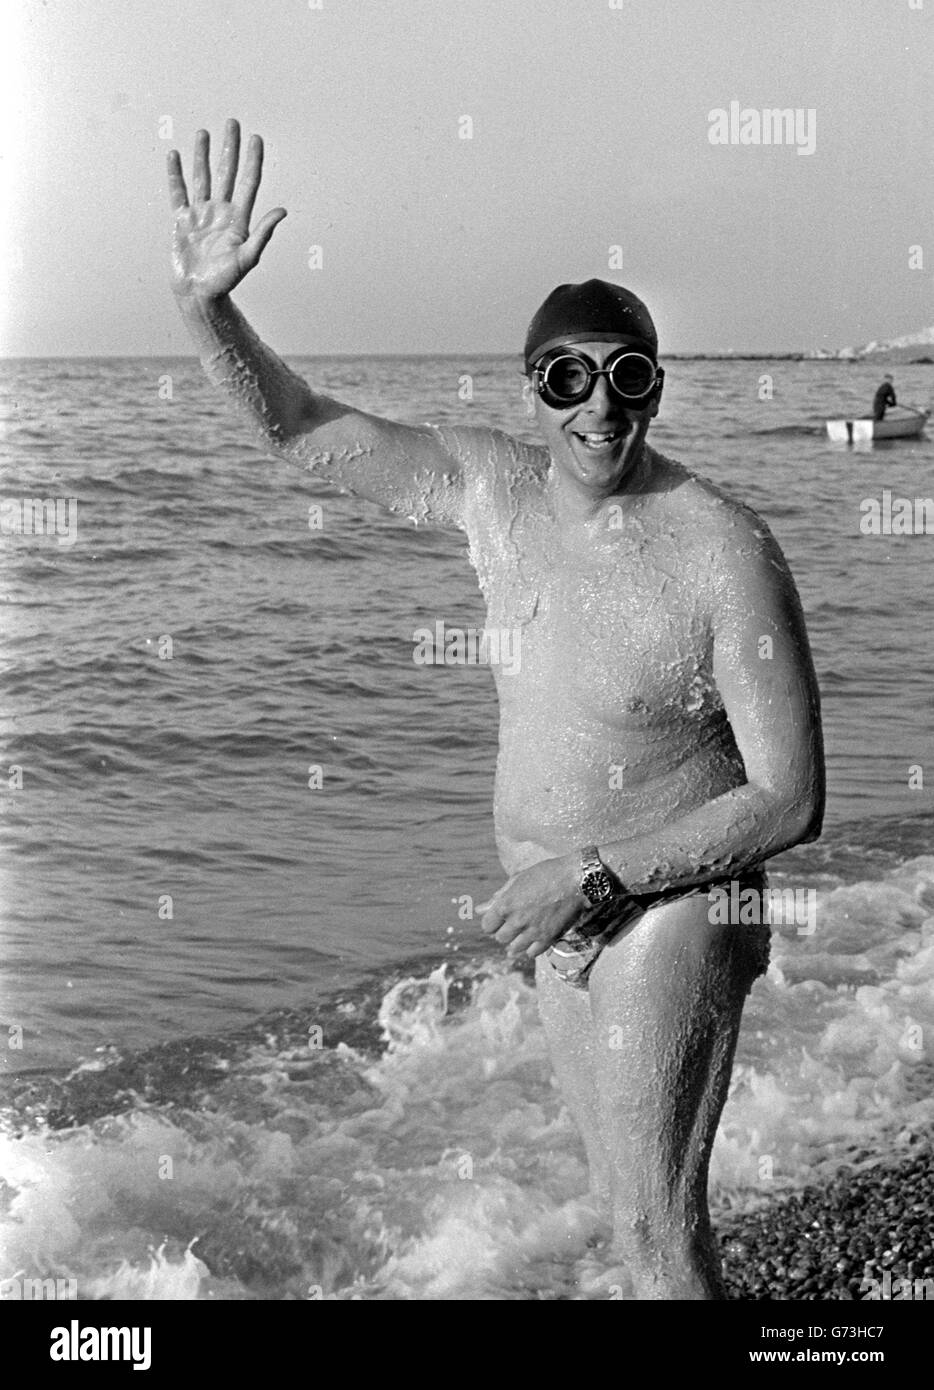 Alle gefettet und bereit, den Kanal von Dover zu schwimmen, ist Mike Read, 39, aus Sproughton, Ipswich, der den Titel des King of the Channel für die größte Anzahl erfolgreicher Schwimmer zurückgewinnen wollte. Er verlor letzte Woche an den Australier des Renford. Er hofft, sein 20. Kanalschwimmen zu beenden Stockfoto